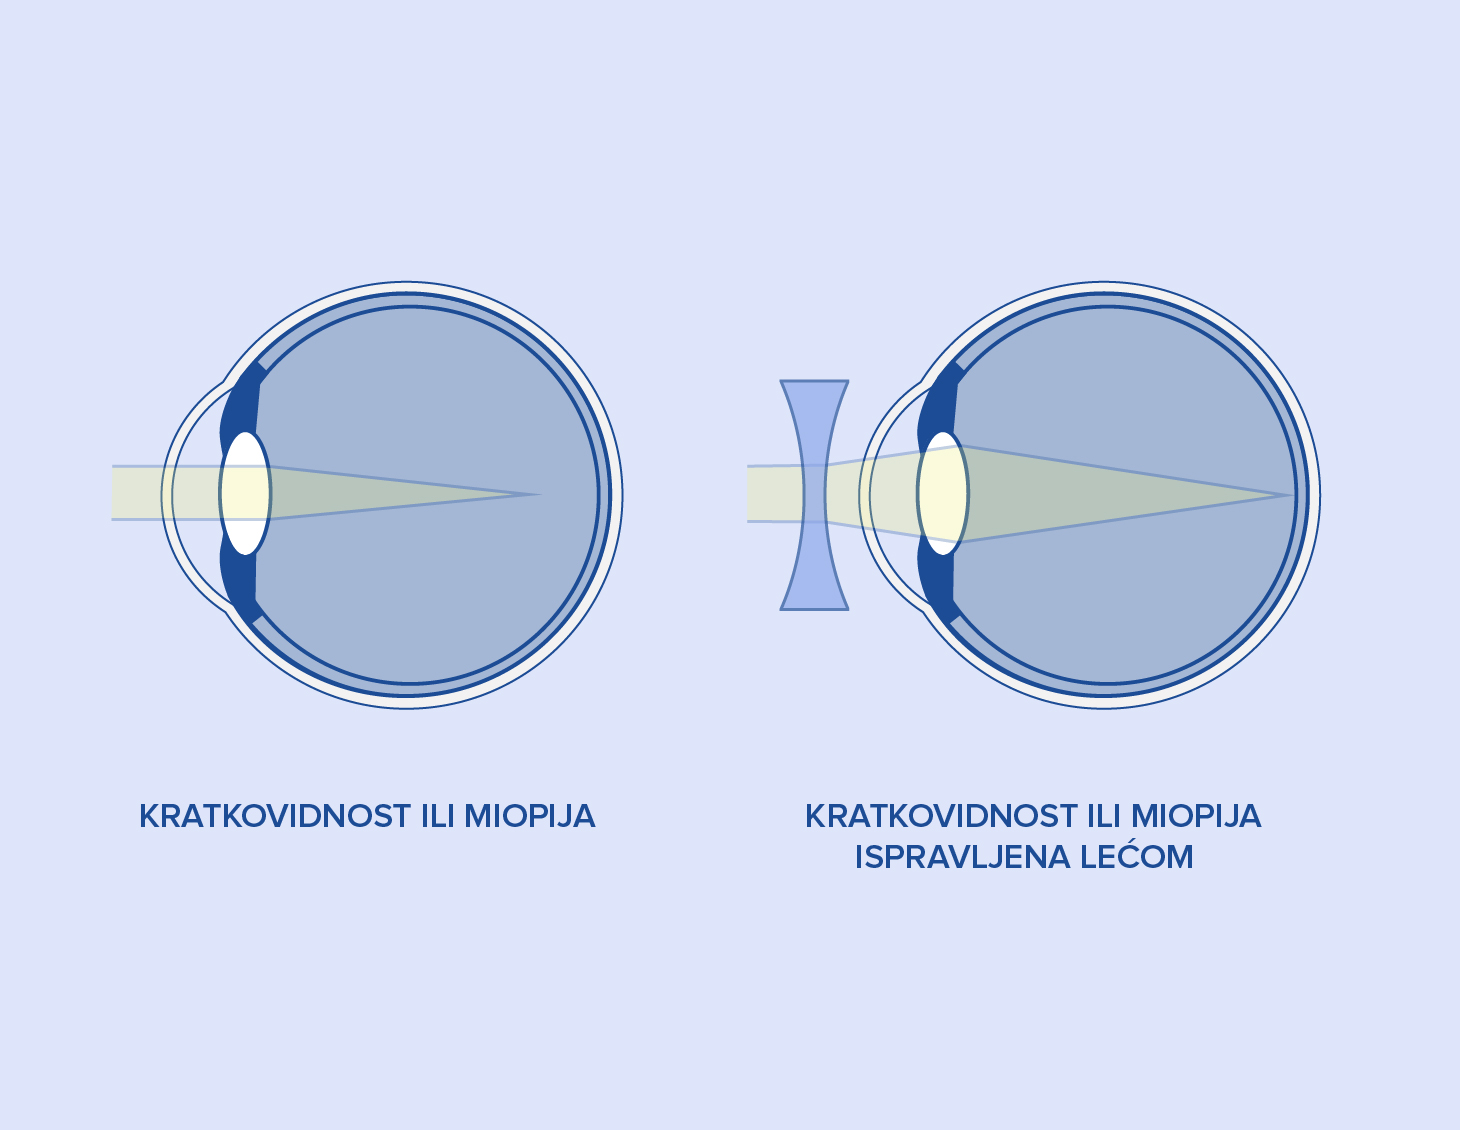 Kratkovidnost ili miopija